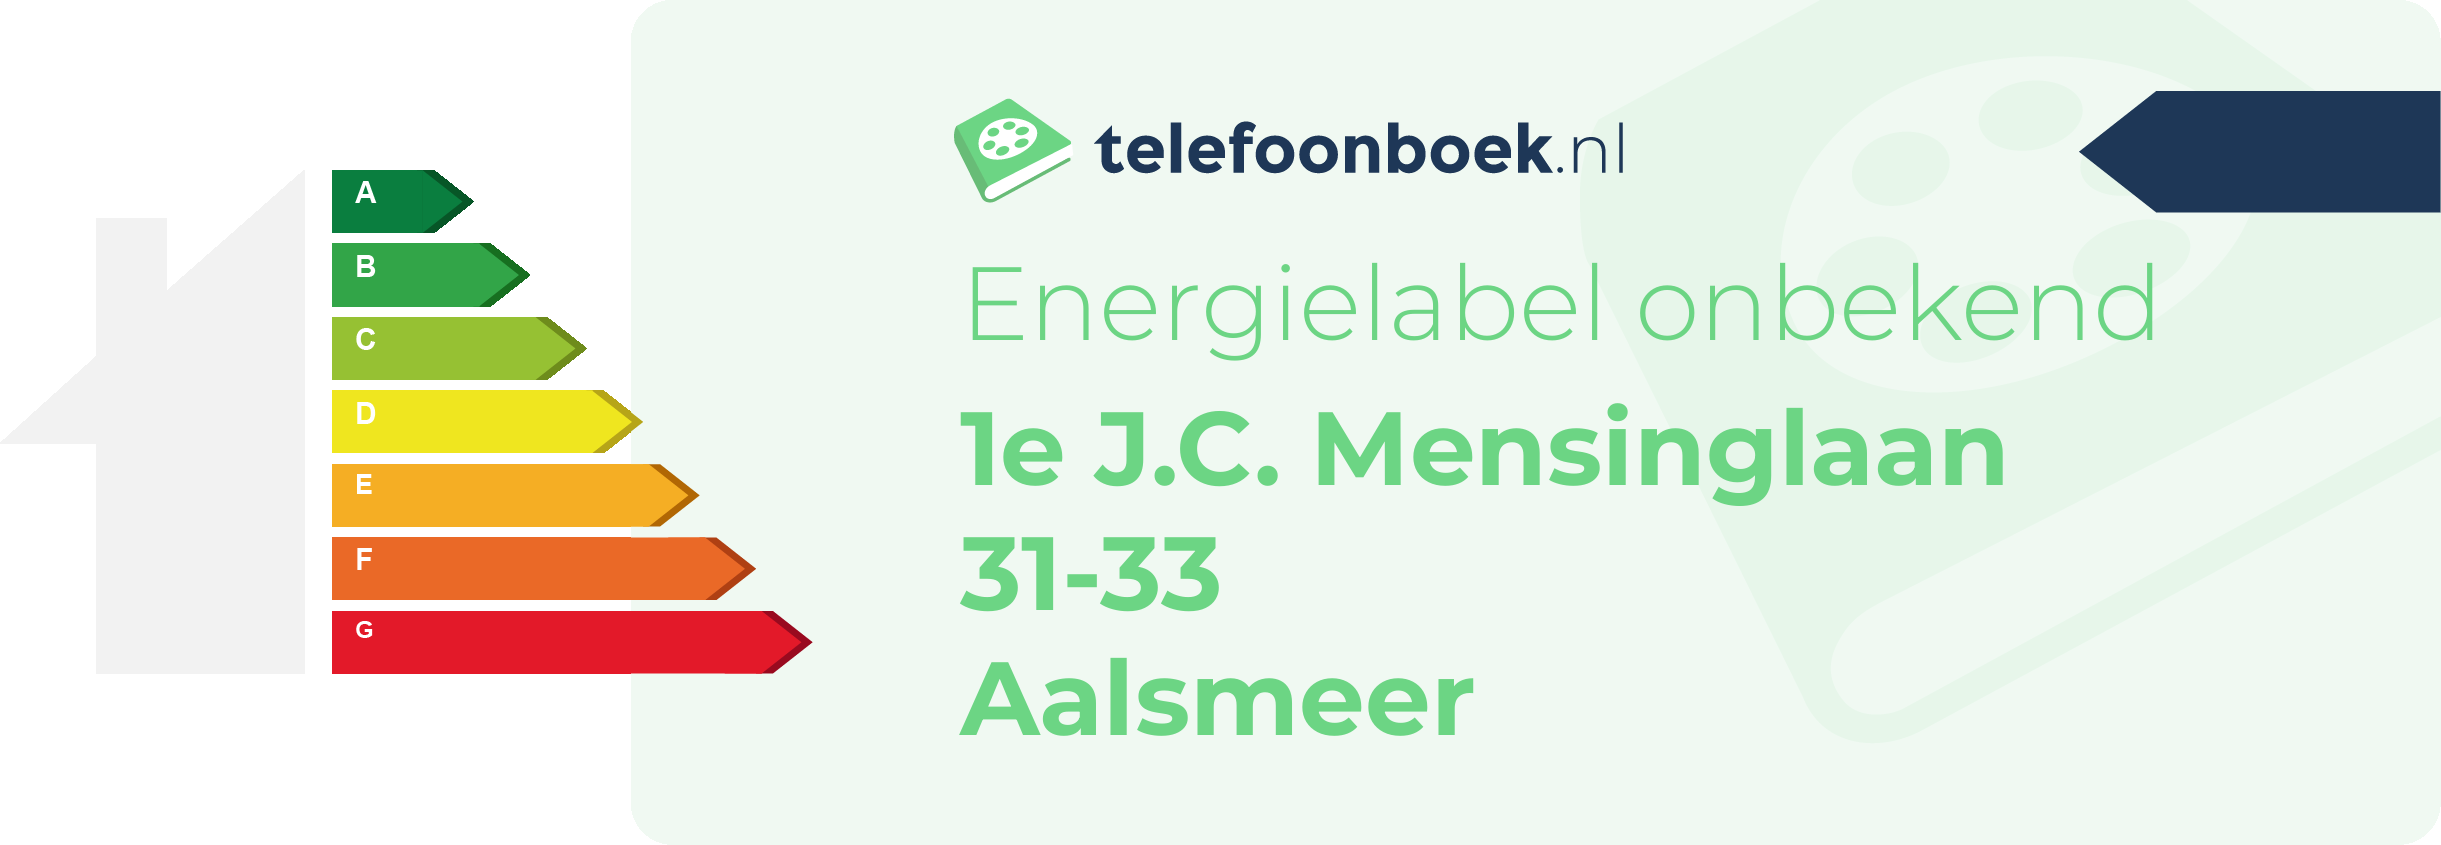 Energielabel 1e J.C. Mensinglaan 31-33 Aalsmeer